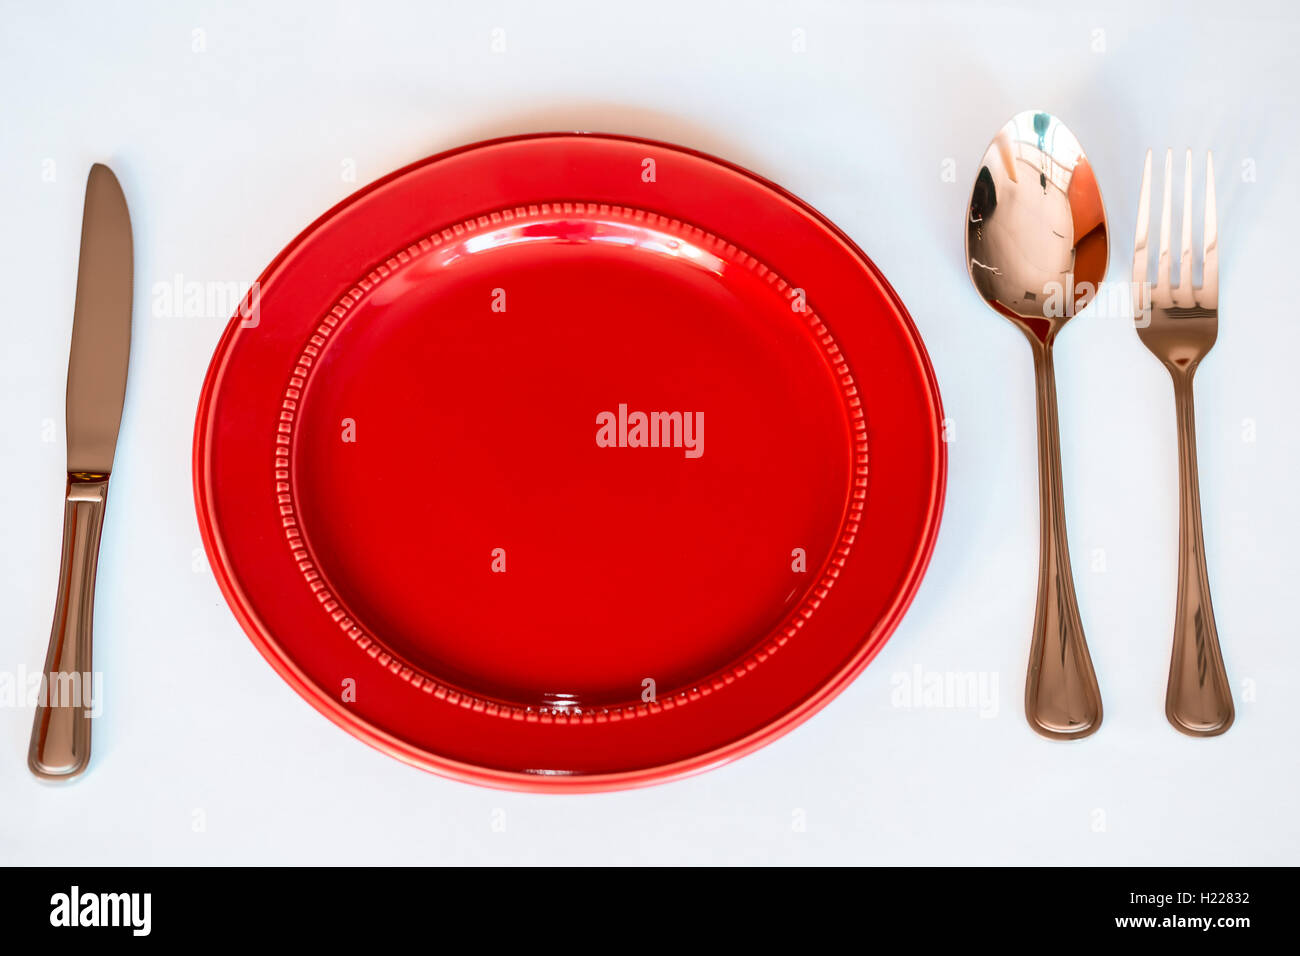 Noël arrière-plan - élégante plaque rouge avec les cookies et la cuillère, fourchette, couteau. Banque D'Images